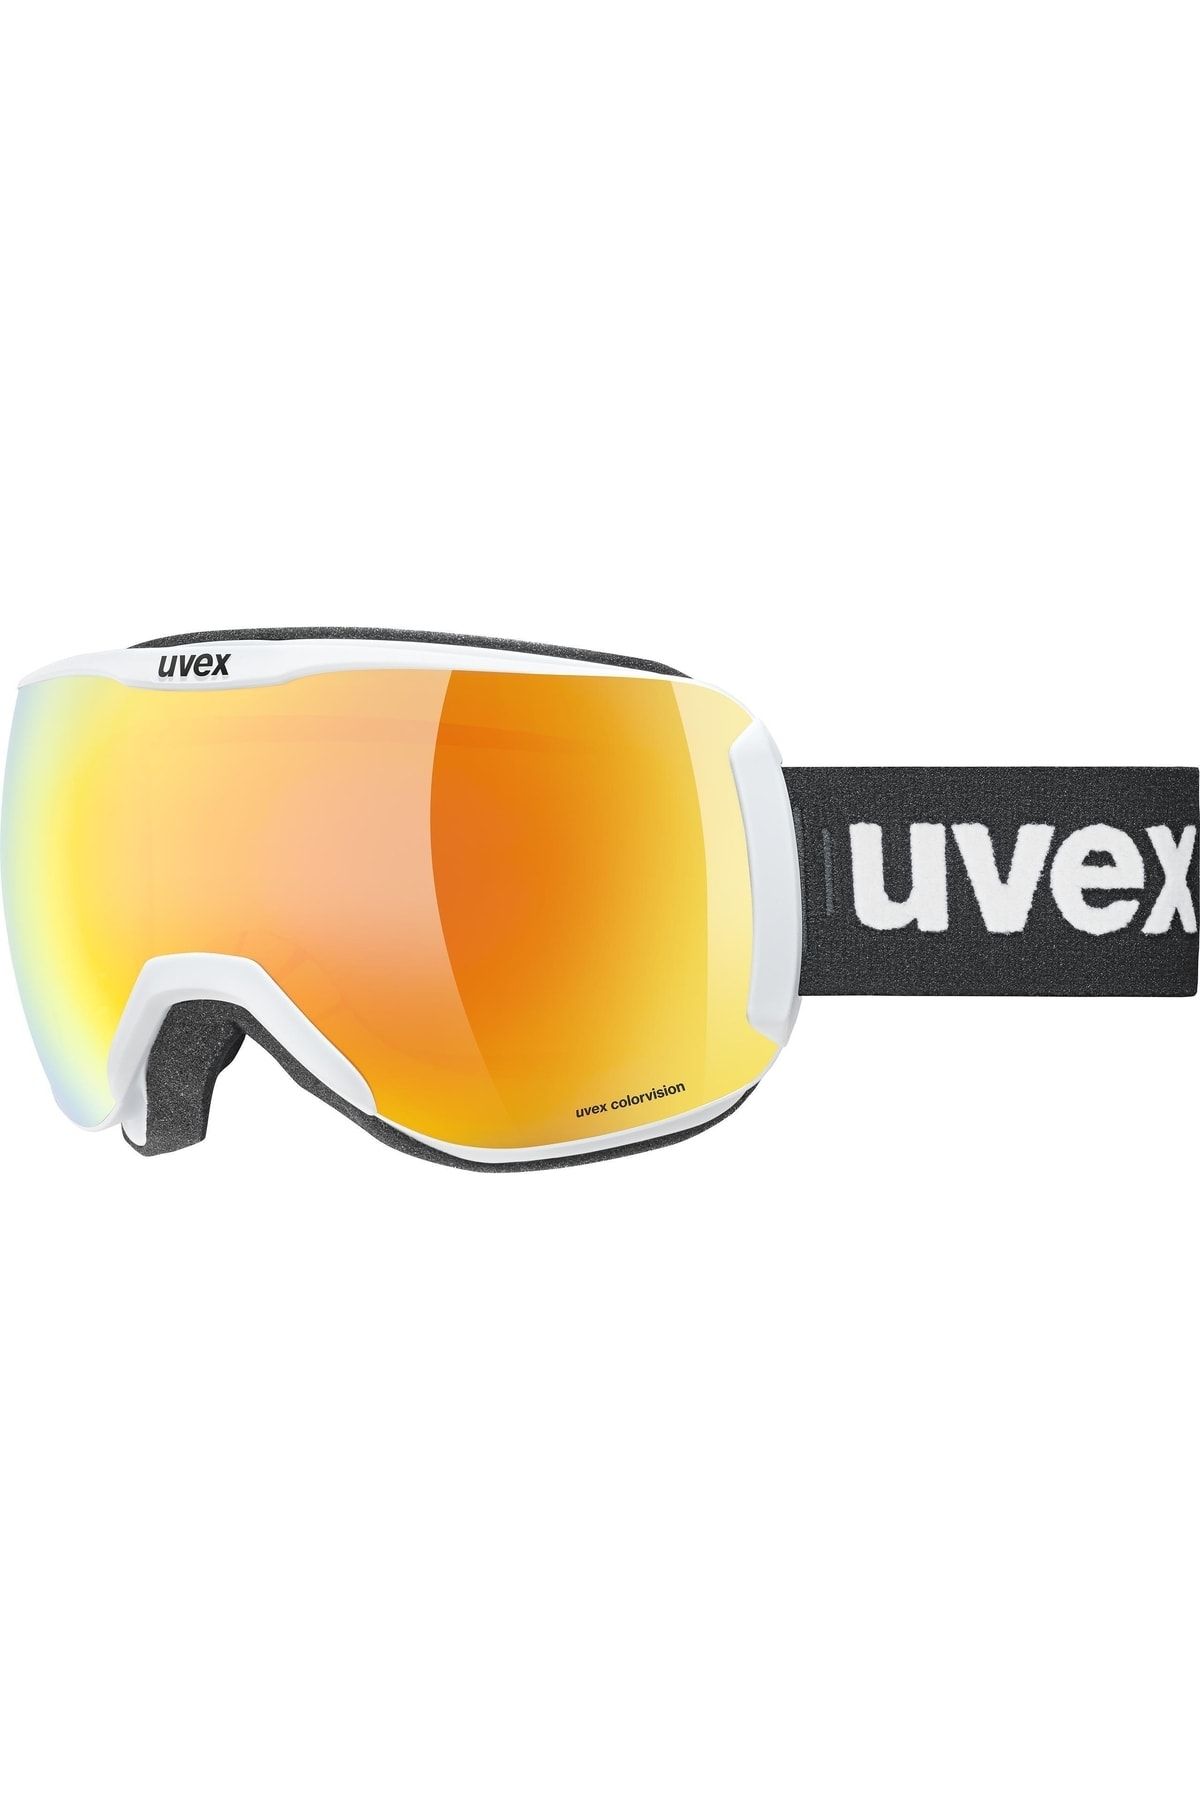 Uvex Downhill 2100 Cv Beyaz Mat Turuncu-yeşil Kayak Gözlüğü